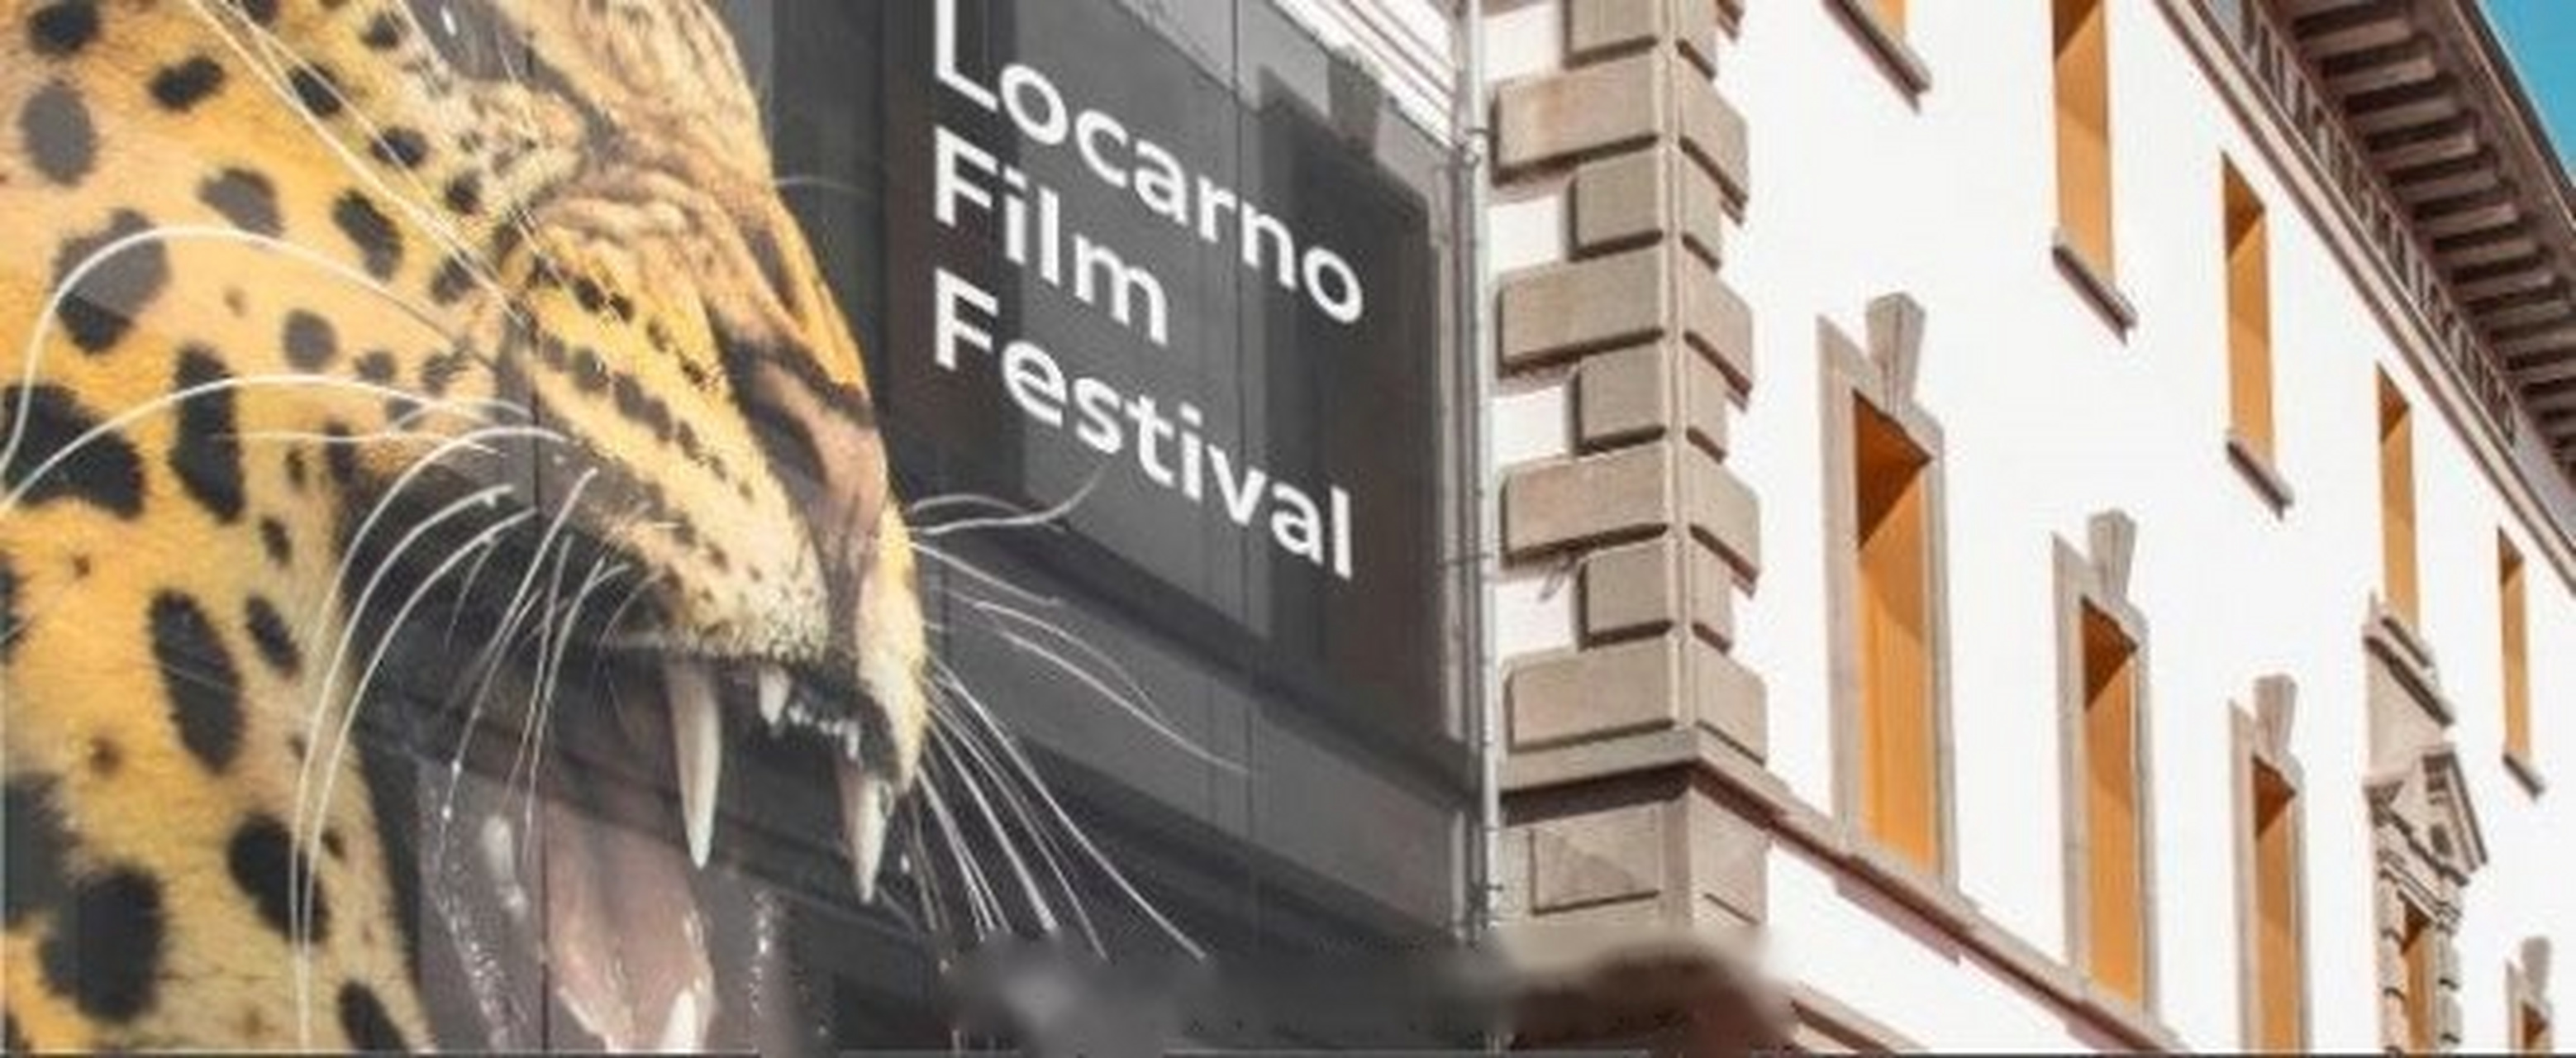 洛迦诺国际电影节组委会宣布,原定于在8月5日到8月15日举办的第73届